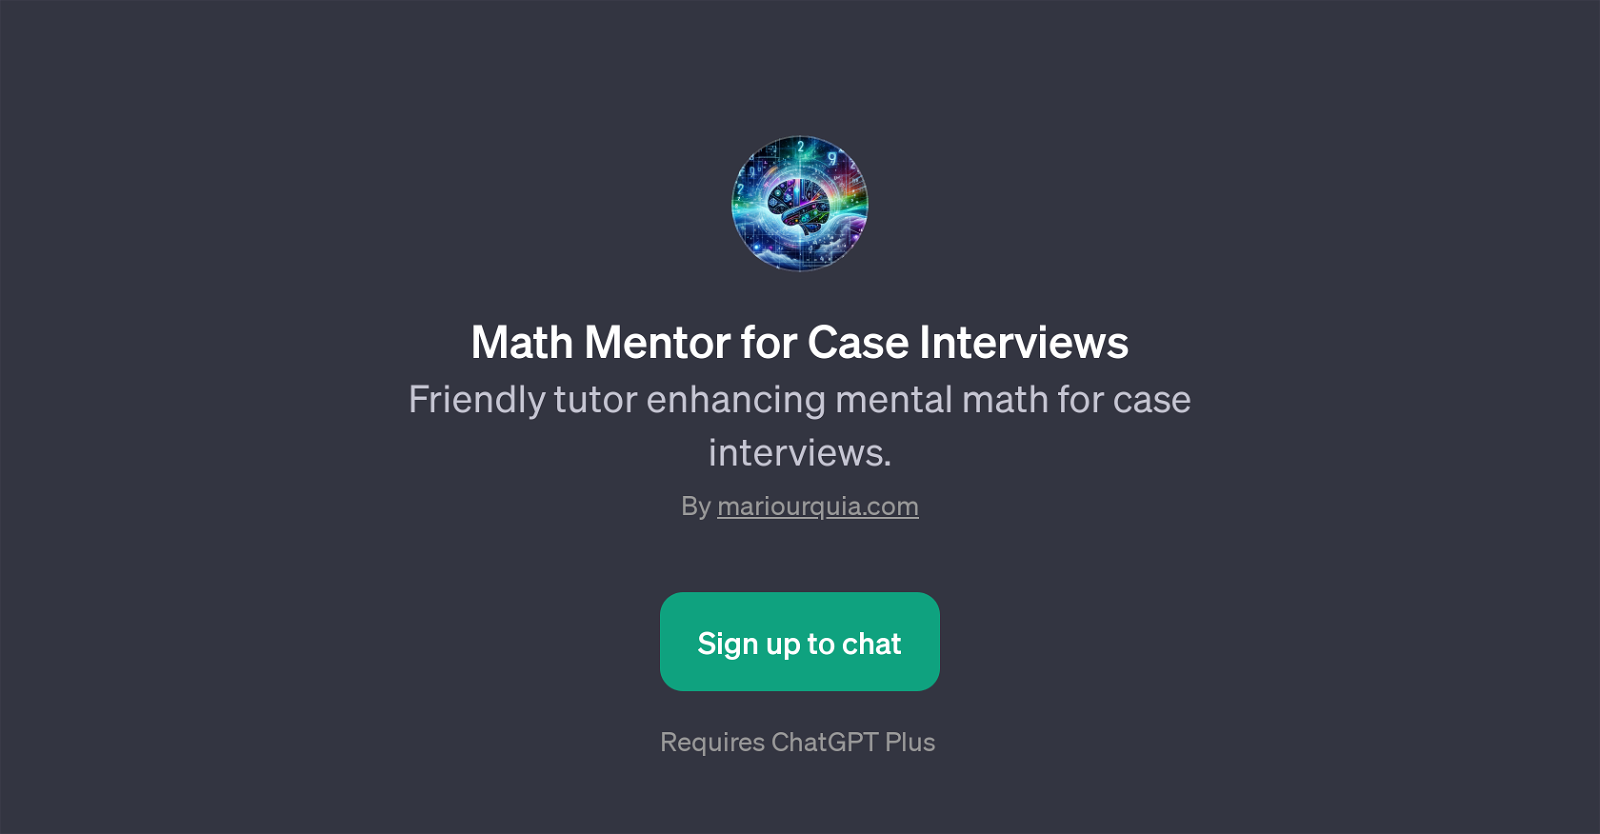 Math Mentor for Case Interviews website